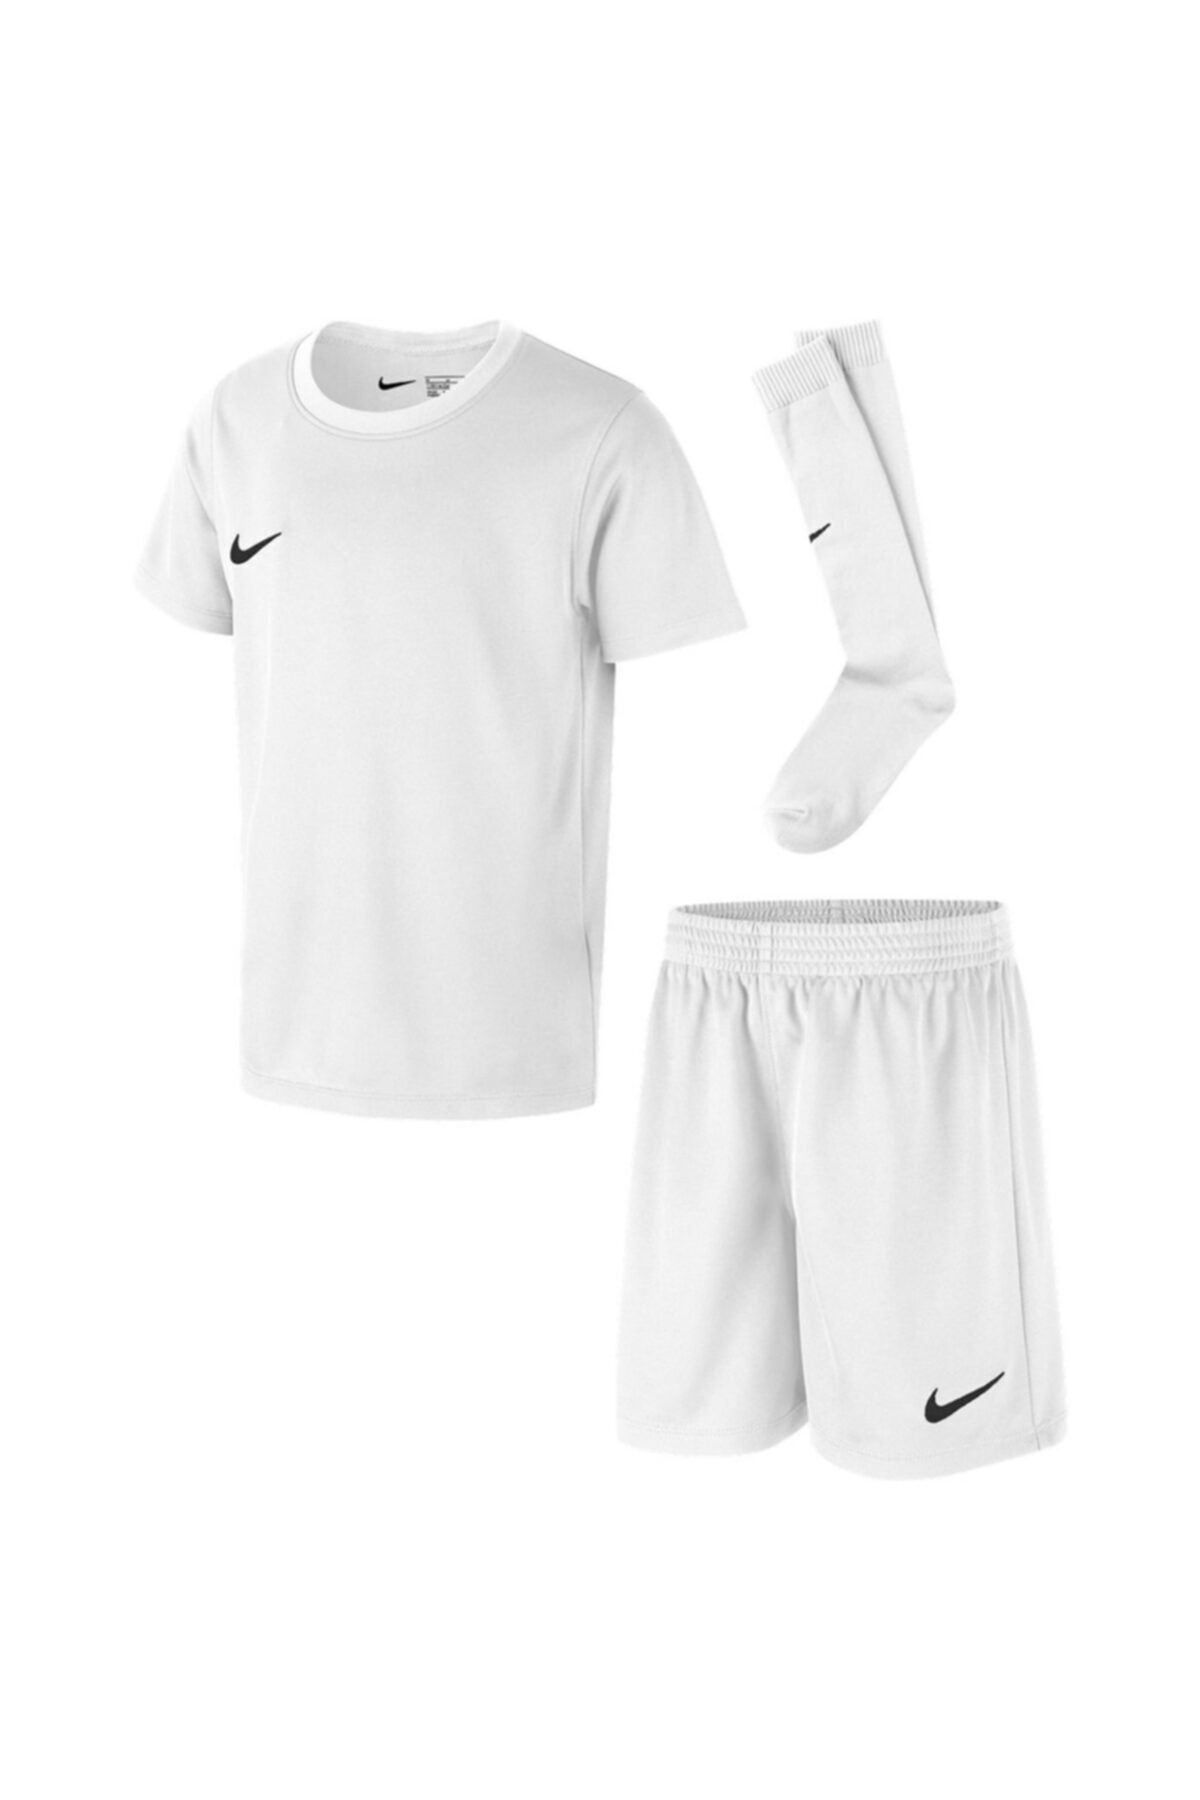 Nike Unisex Dry Park20 Kit Set K Çocuk Beyaz Futbol Forma Takımı Cd2244-100